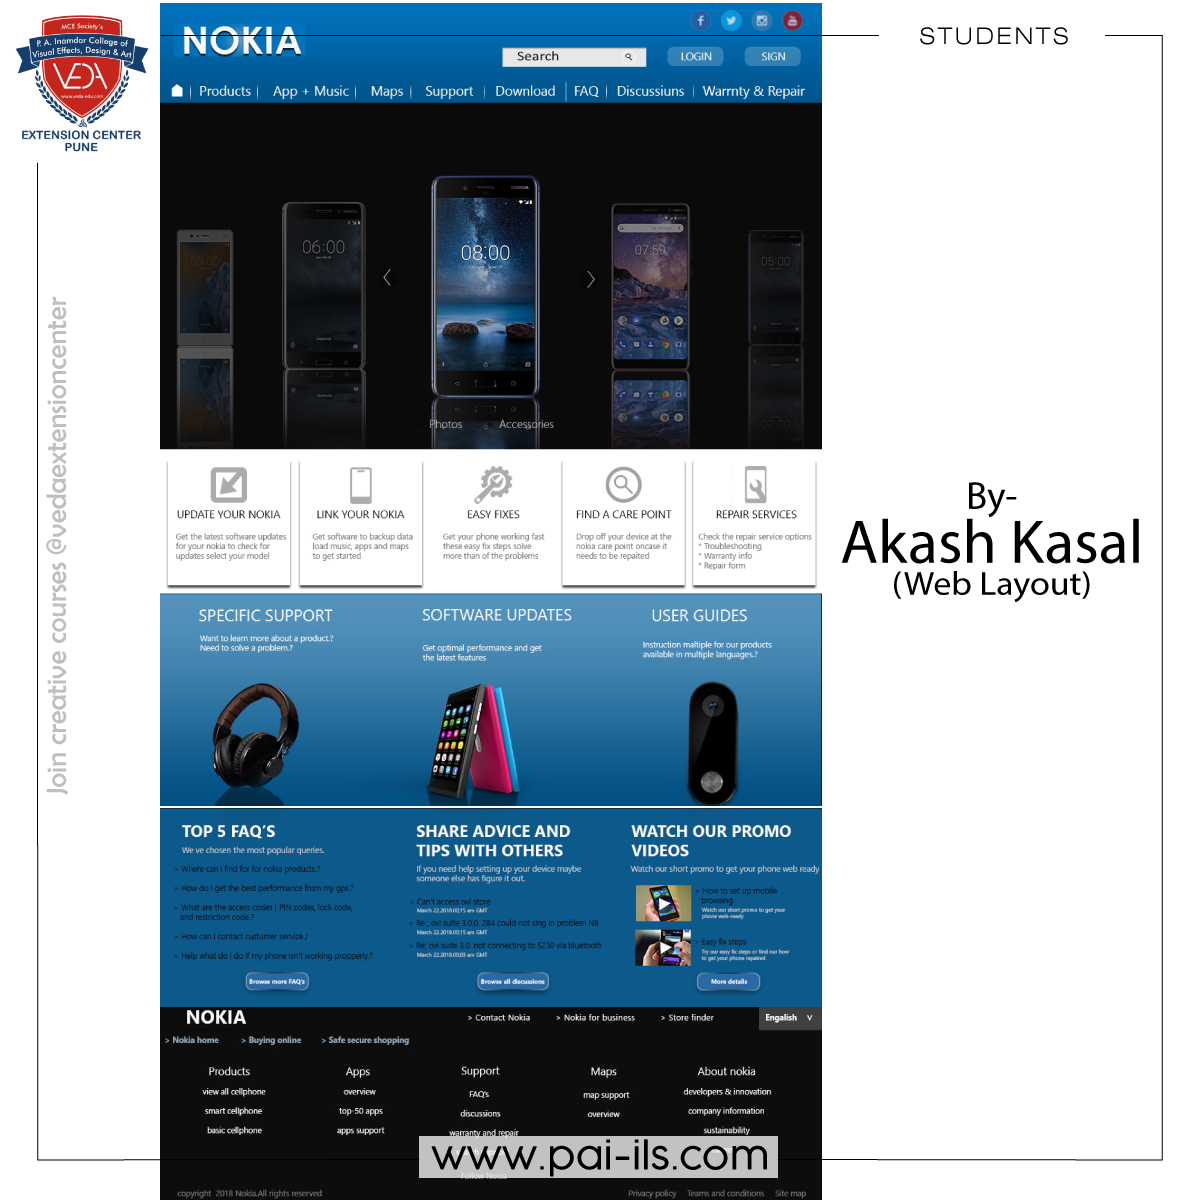 Akash-Kasal-(-Web-Layout-)